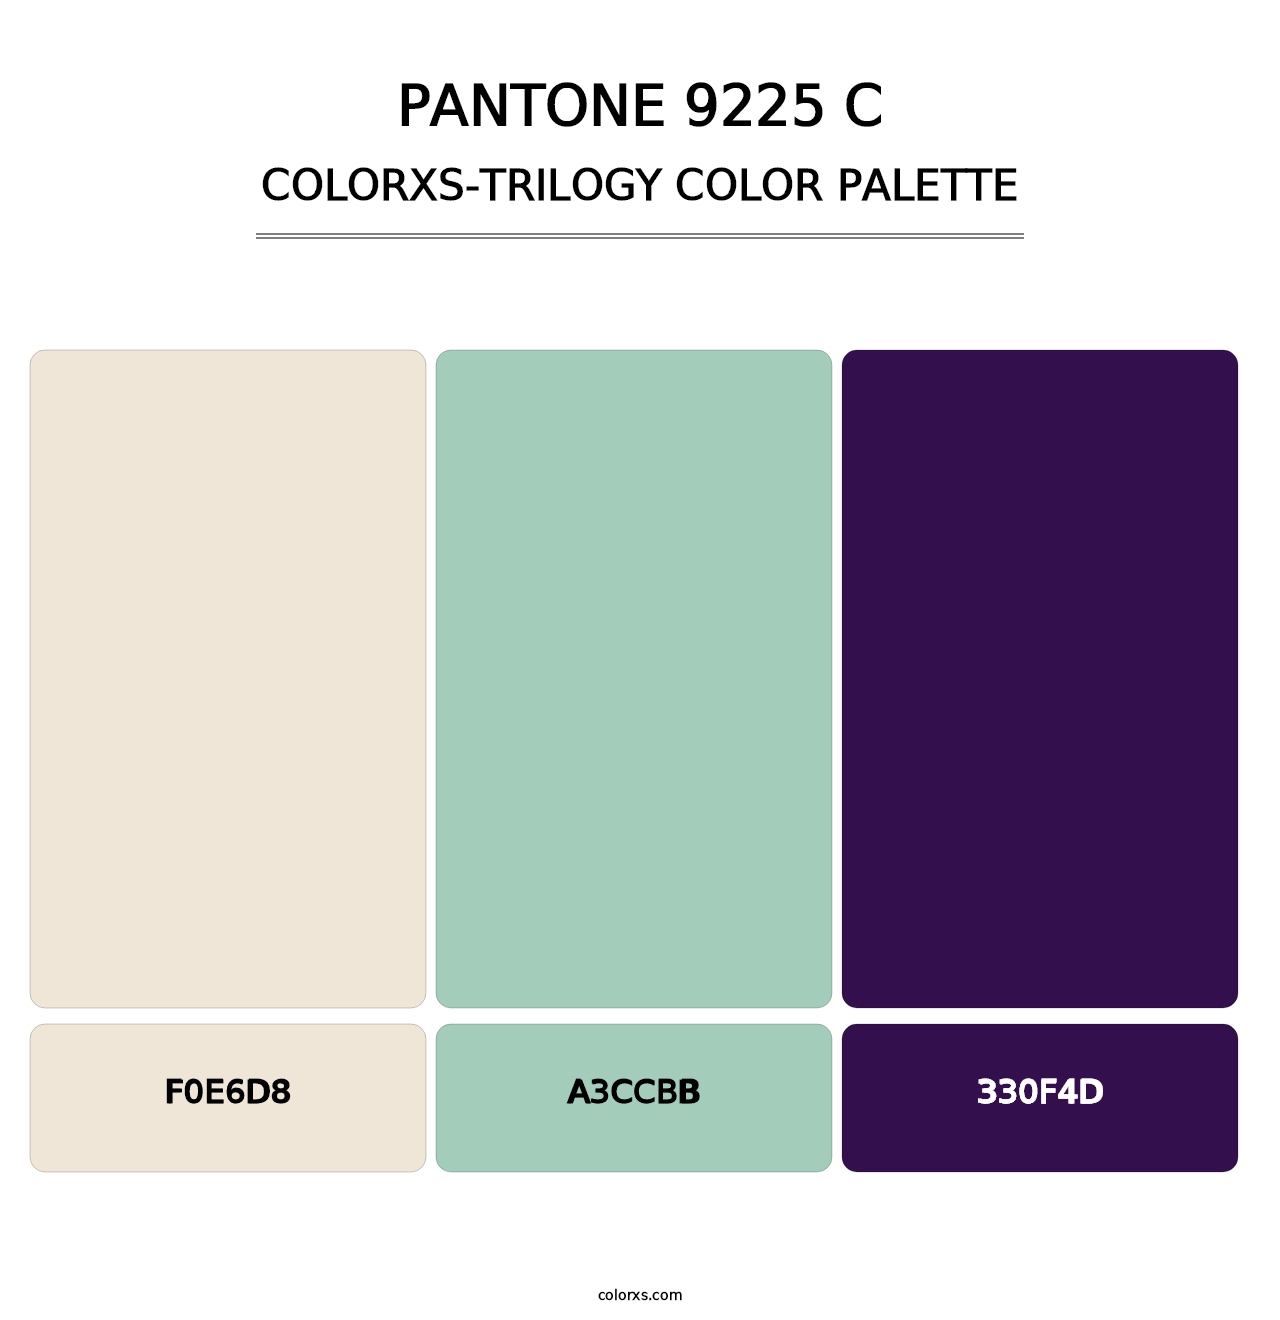 PANTONE 9225 C - Colorxs Trilogy Palette